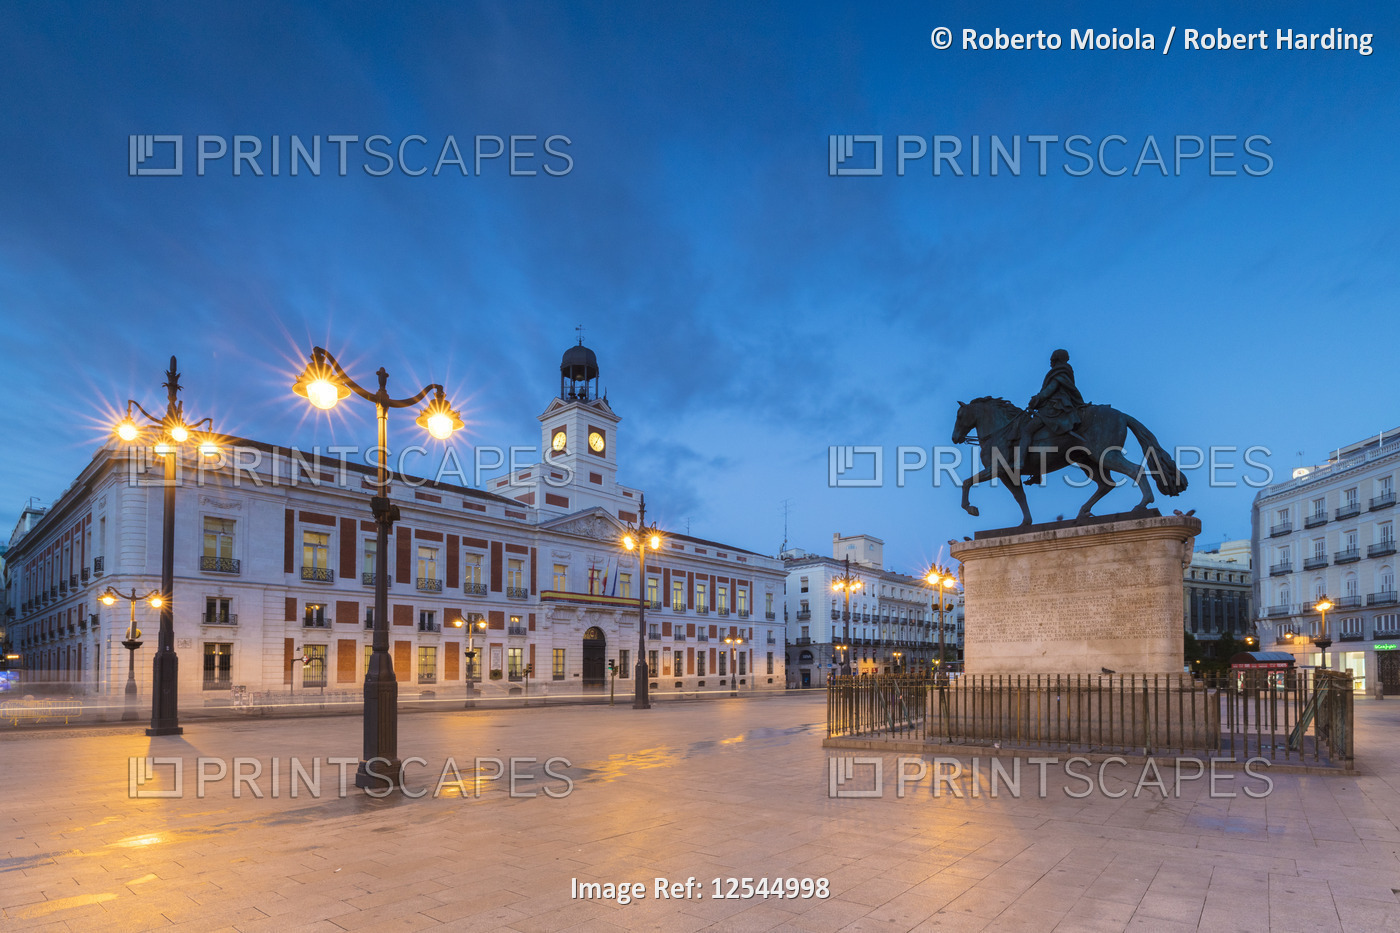 Real Casa de Correos, (Royal House of the Post Office), Plaza de la Puerta del Sol, Madrid, Spain